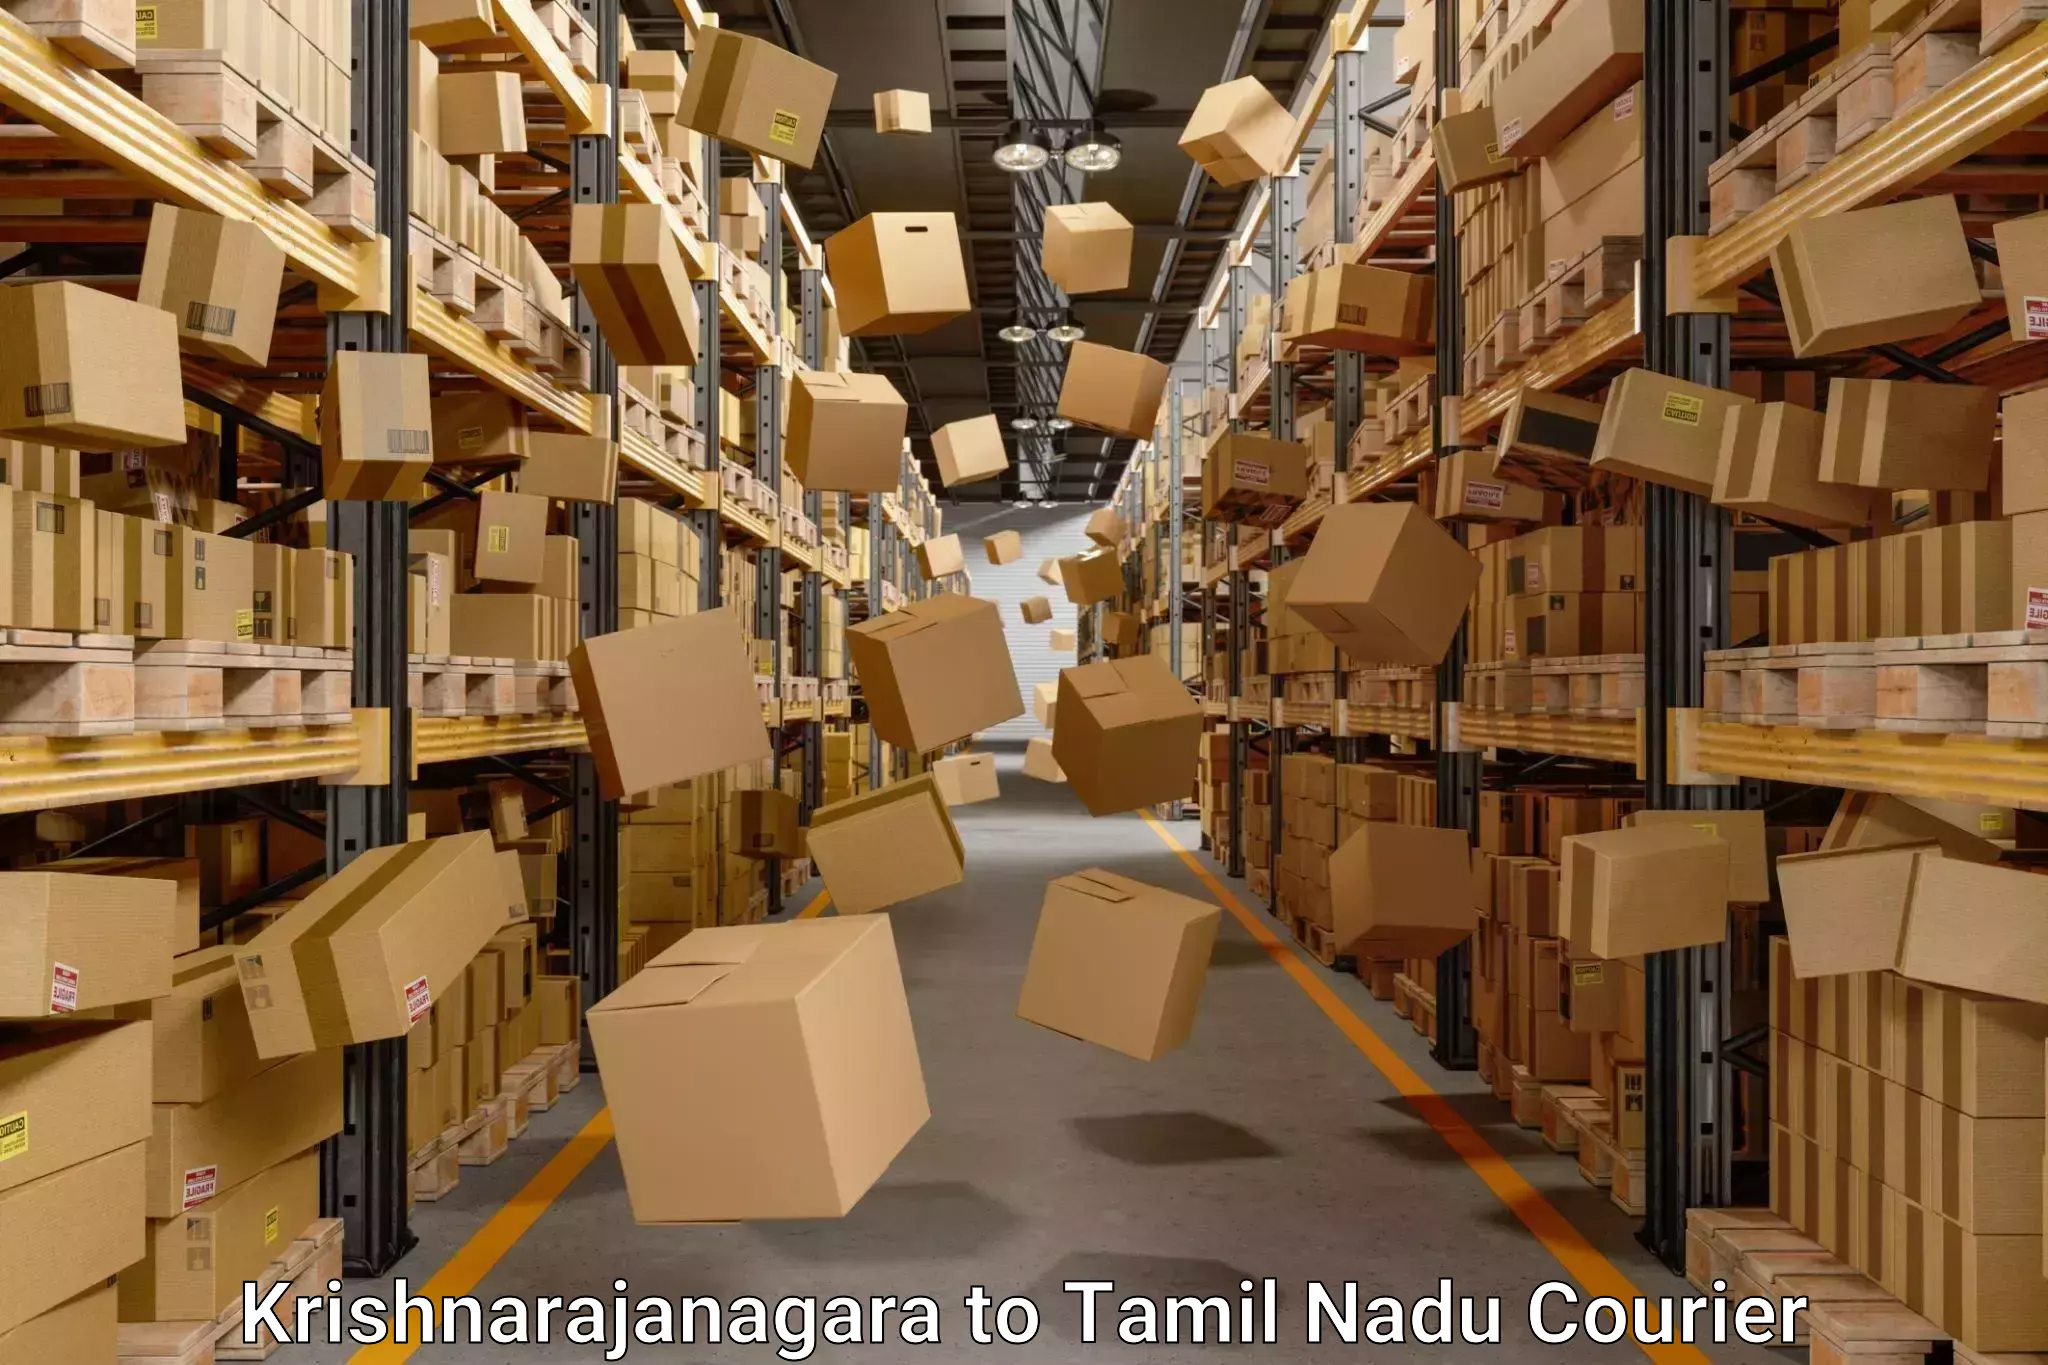 Moving and storage services Krishnarajanagara to Melmaruvathur